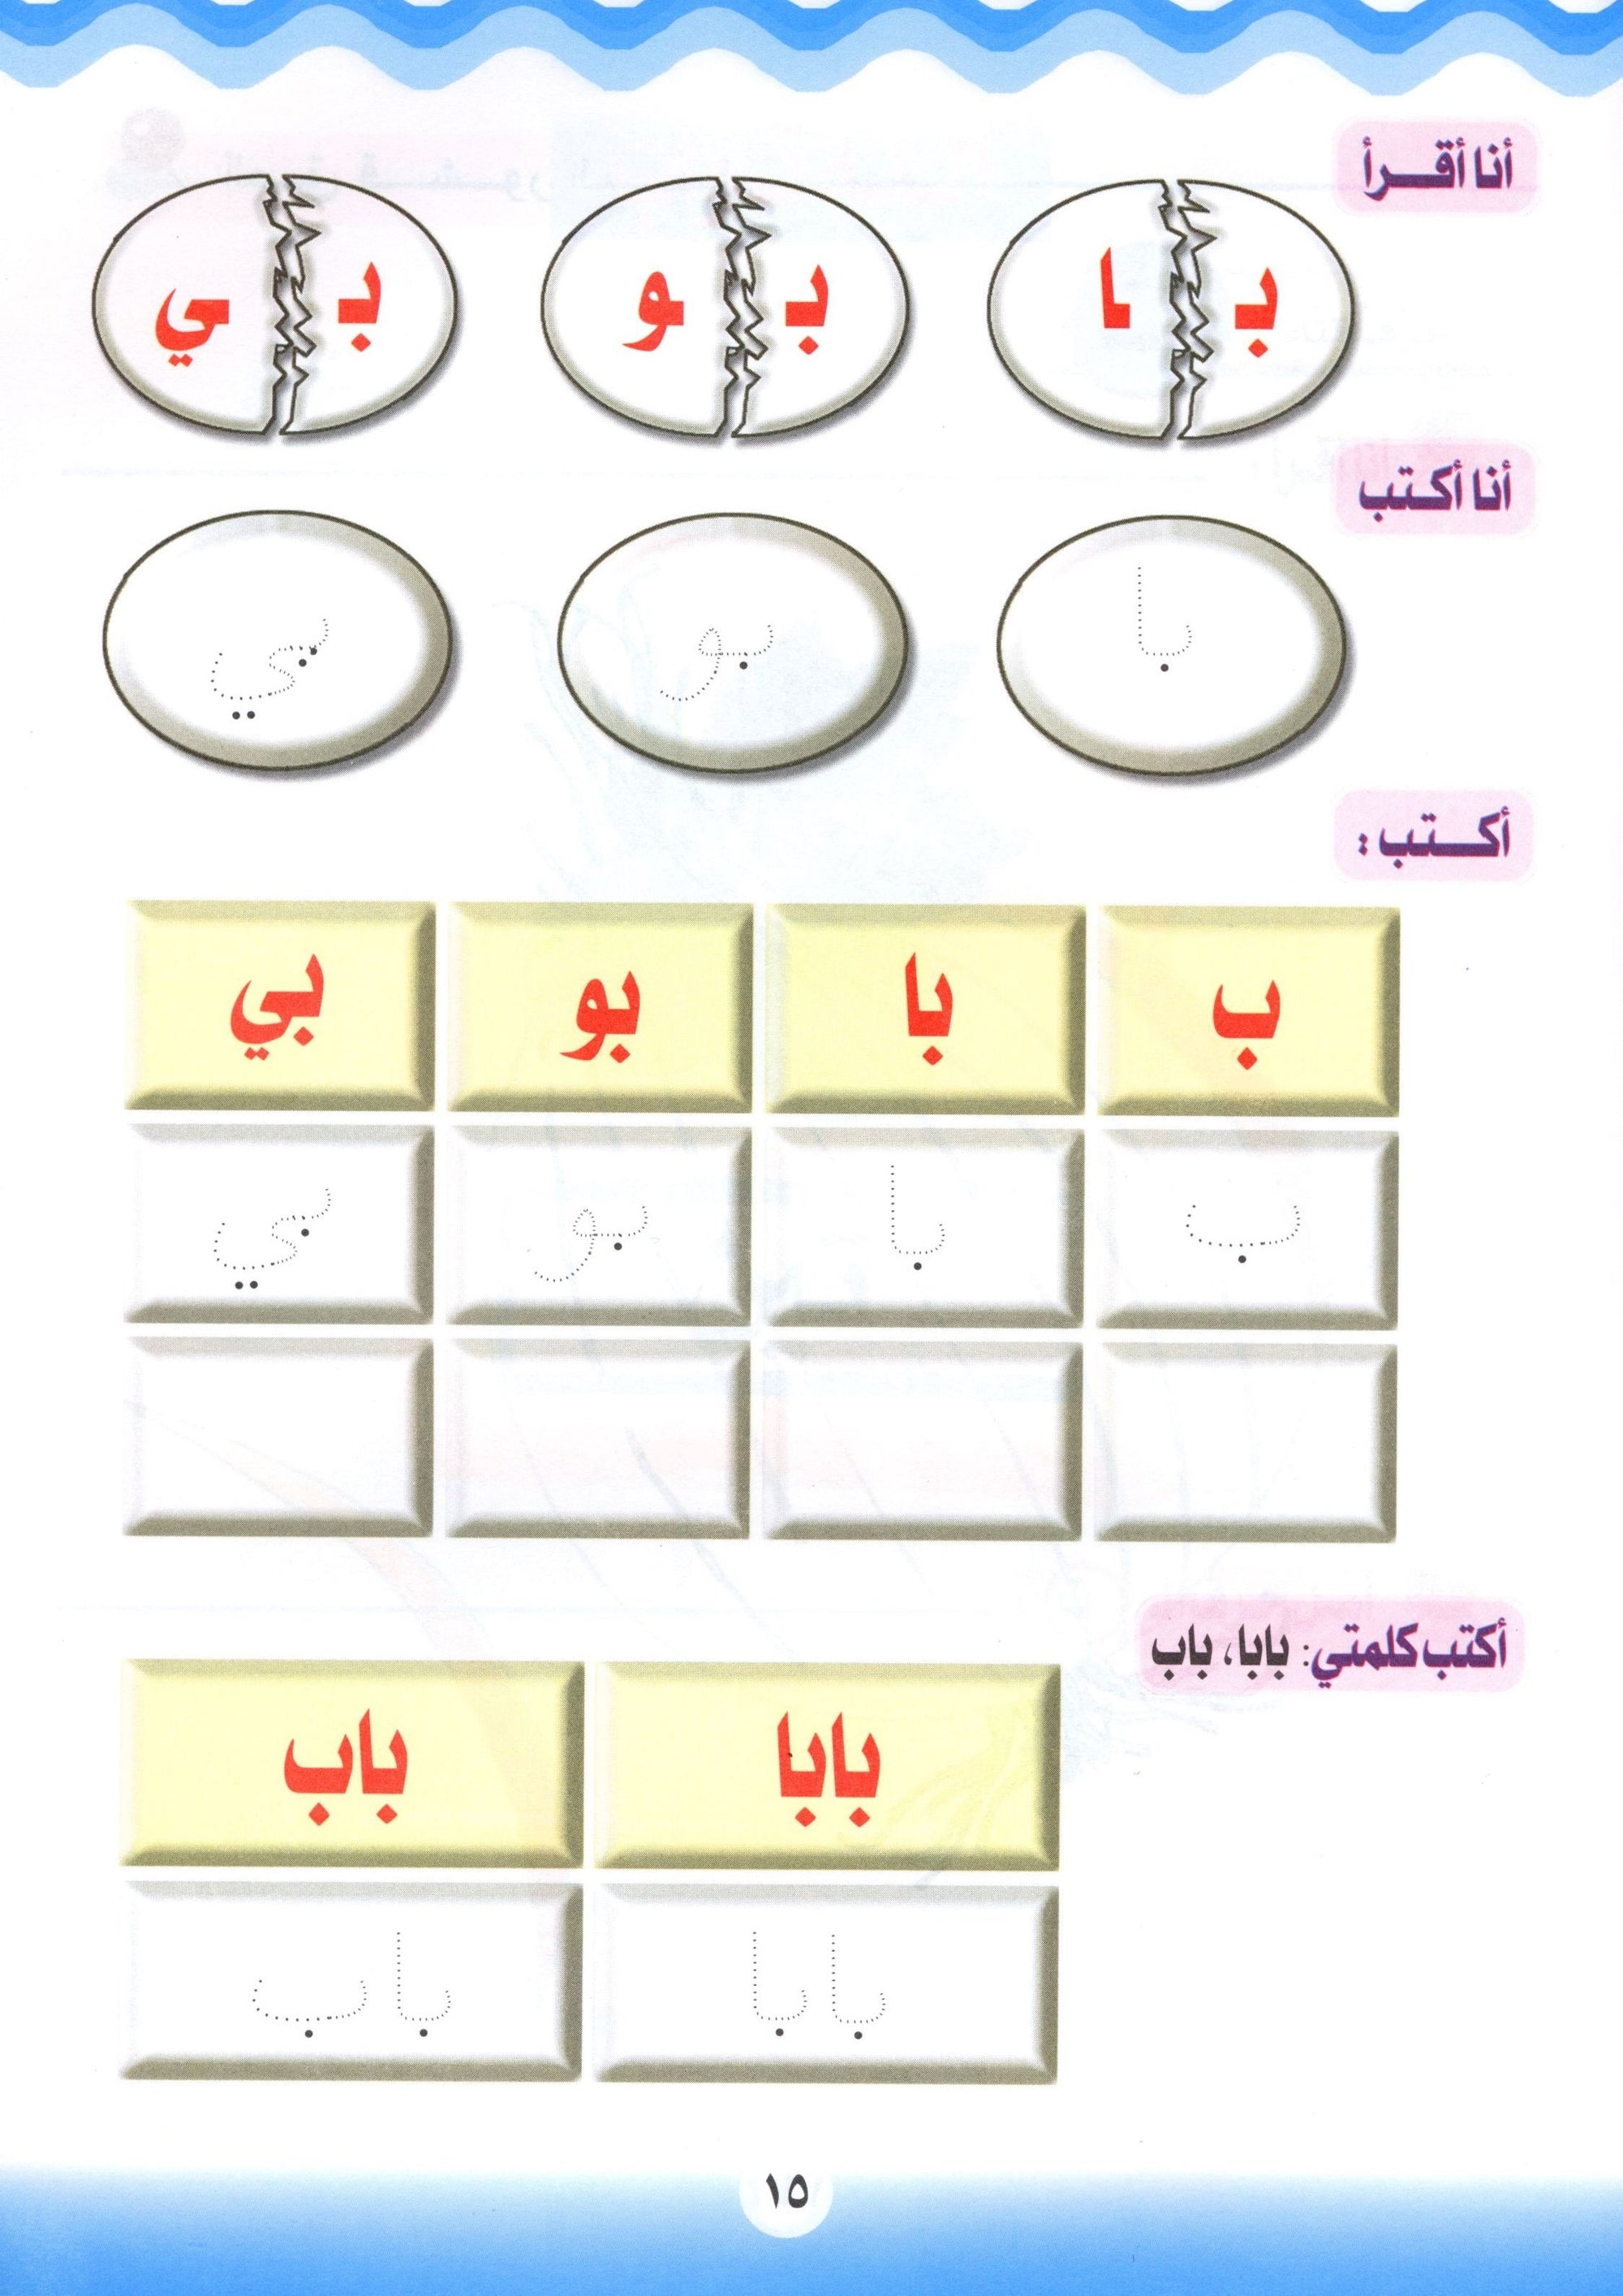 Learn the Arabic Language Book 2 تعلم اللغة العربية